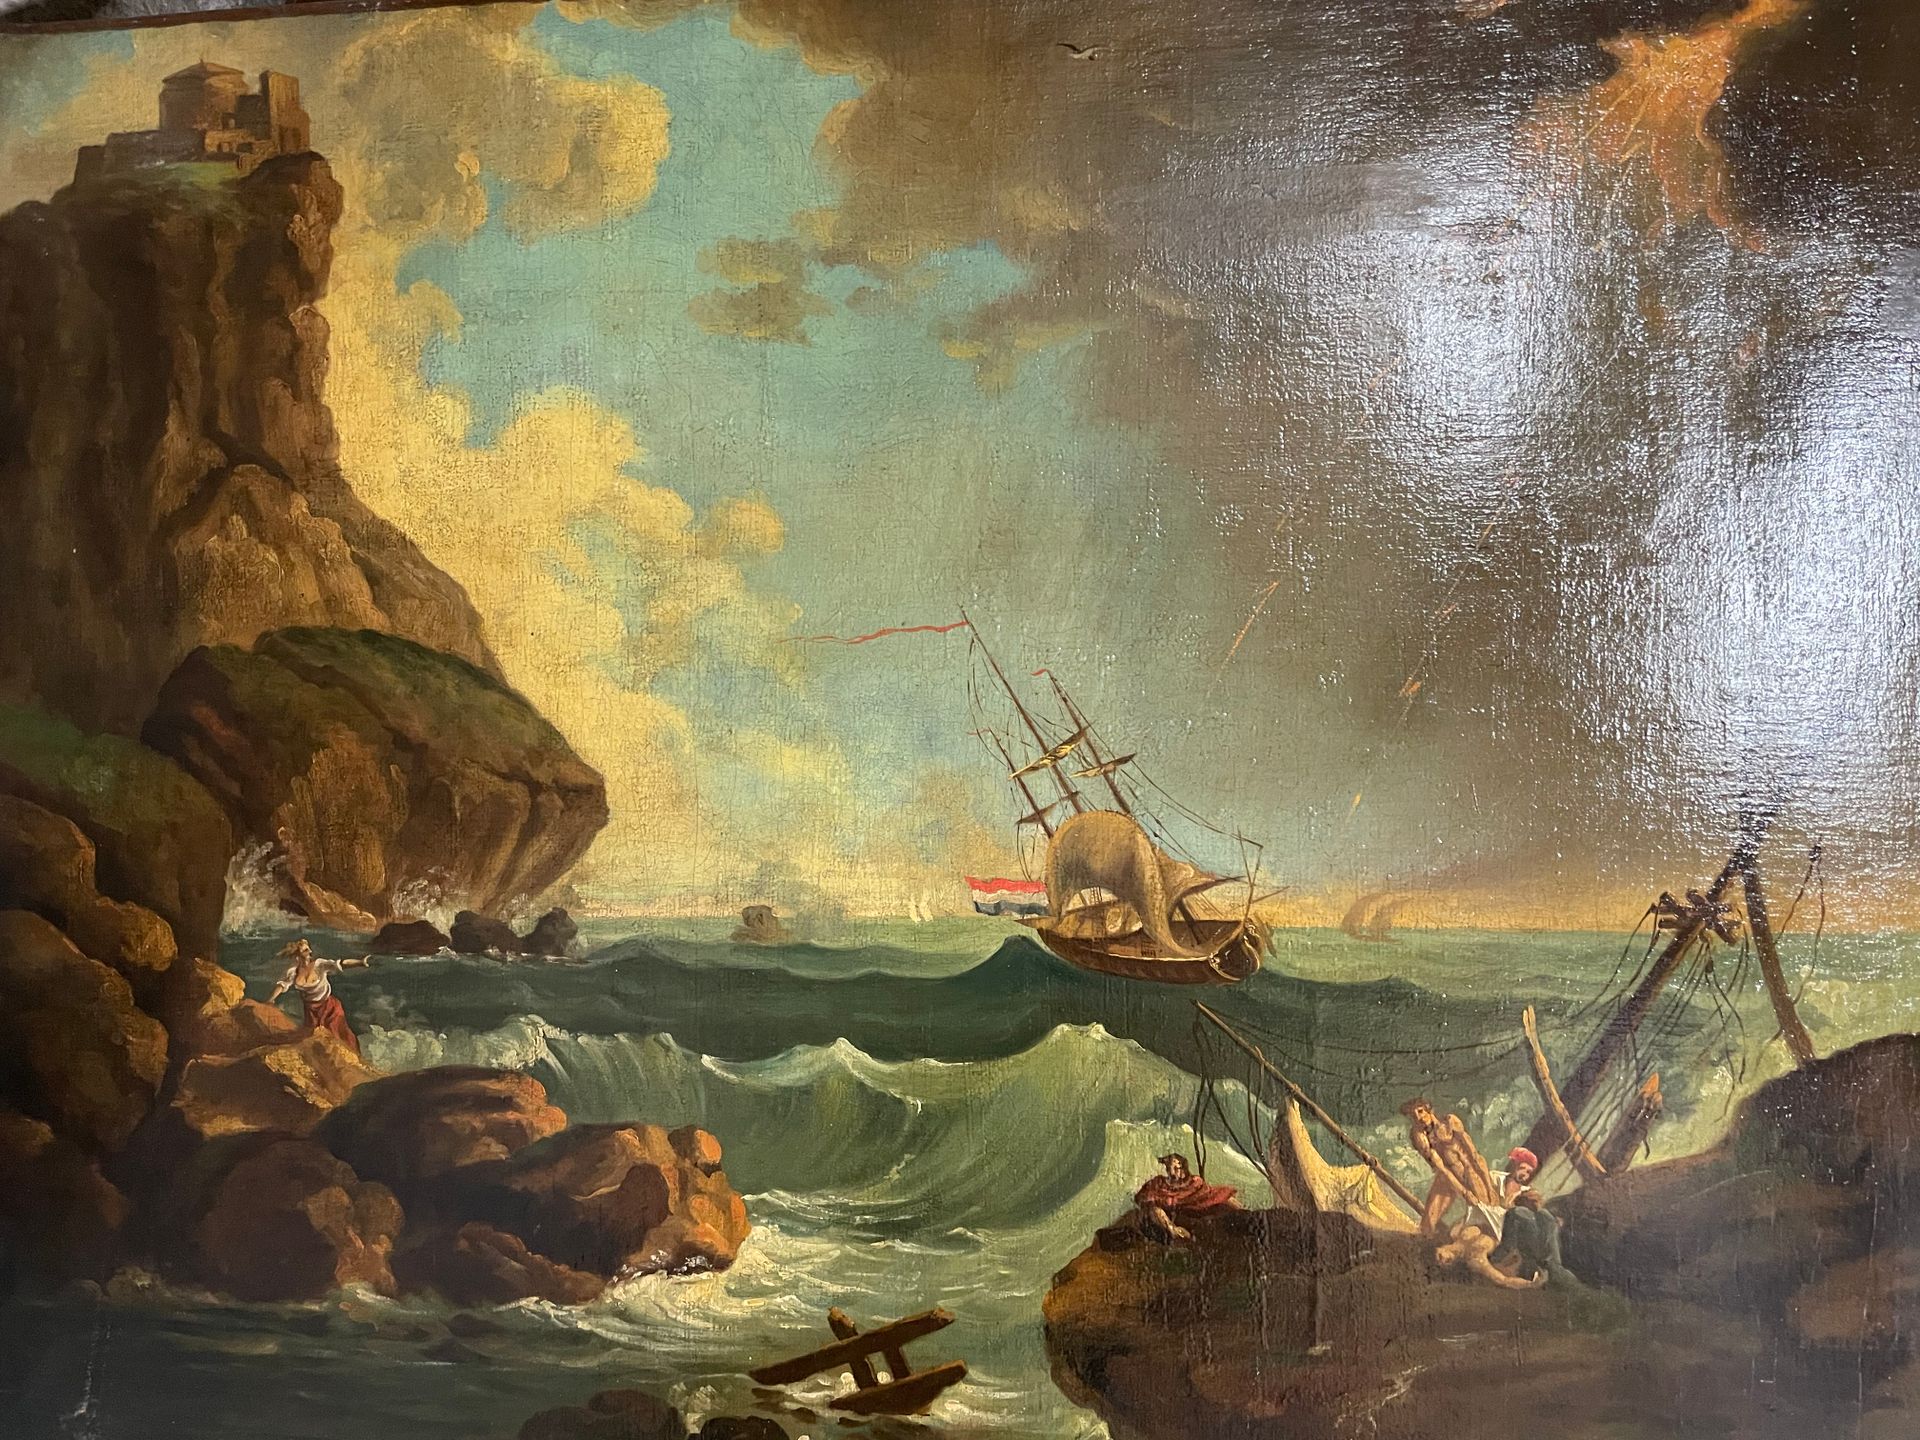 D'après Claude Joseph VERNET Storm on a rocky coast
Oil on canvas
101x77 cm.